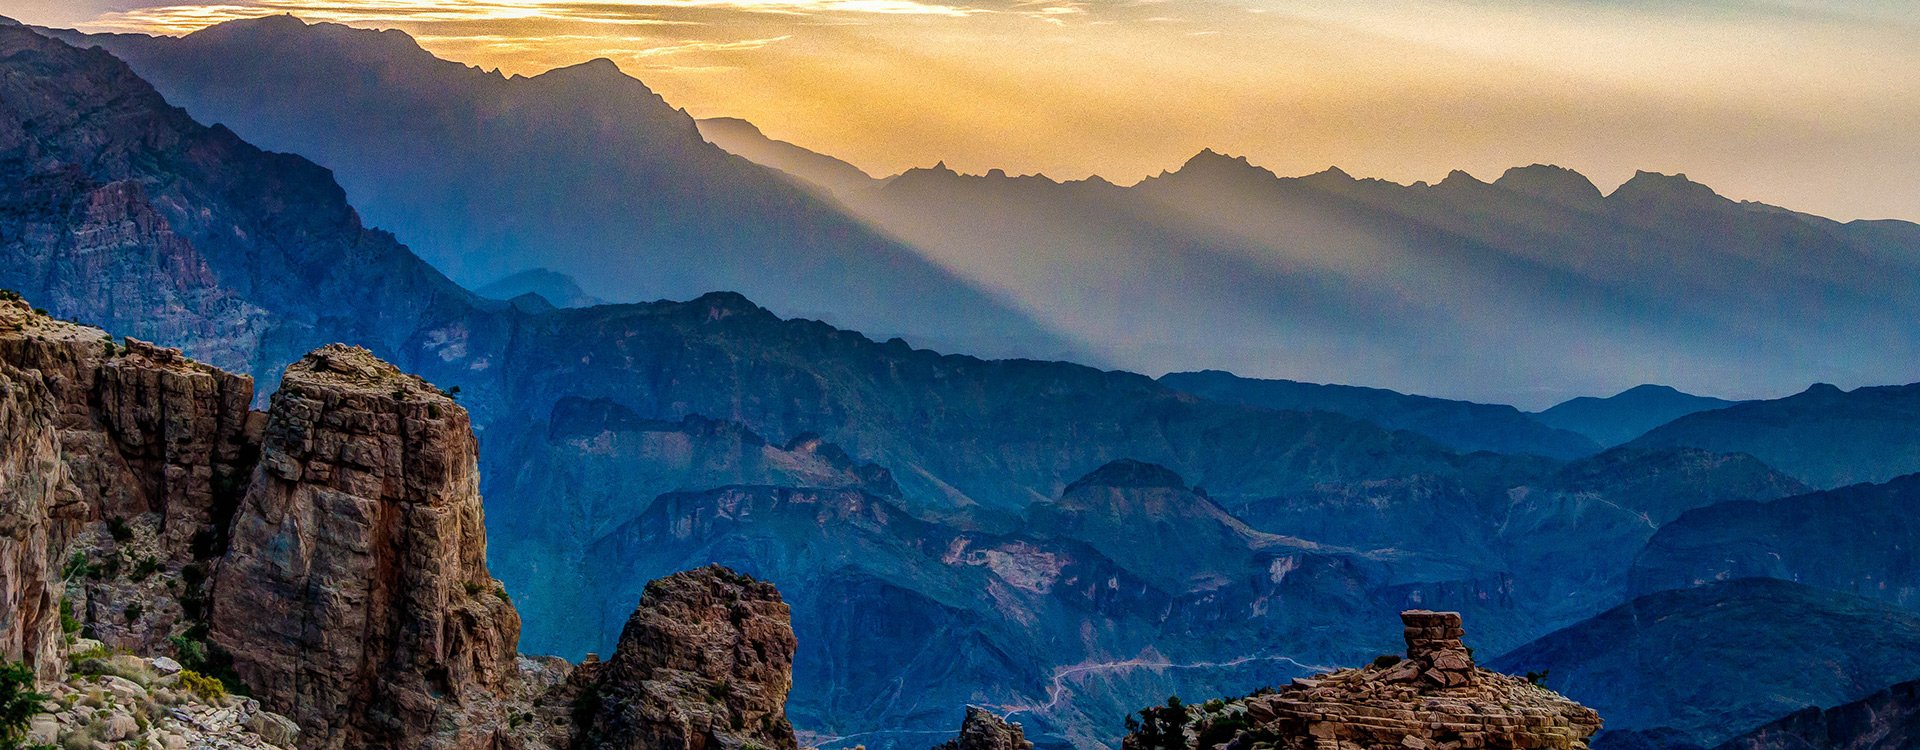 Oman_Al Hajar Mountain